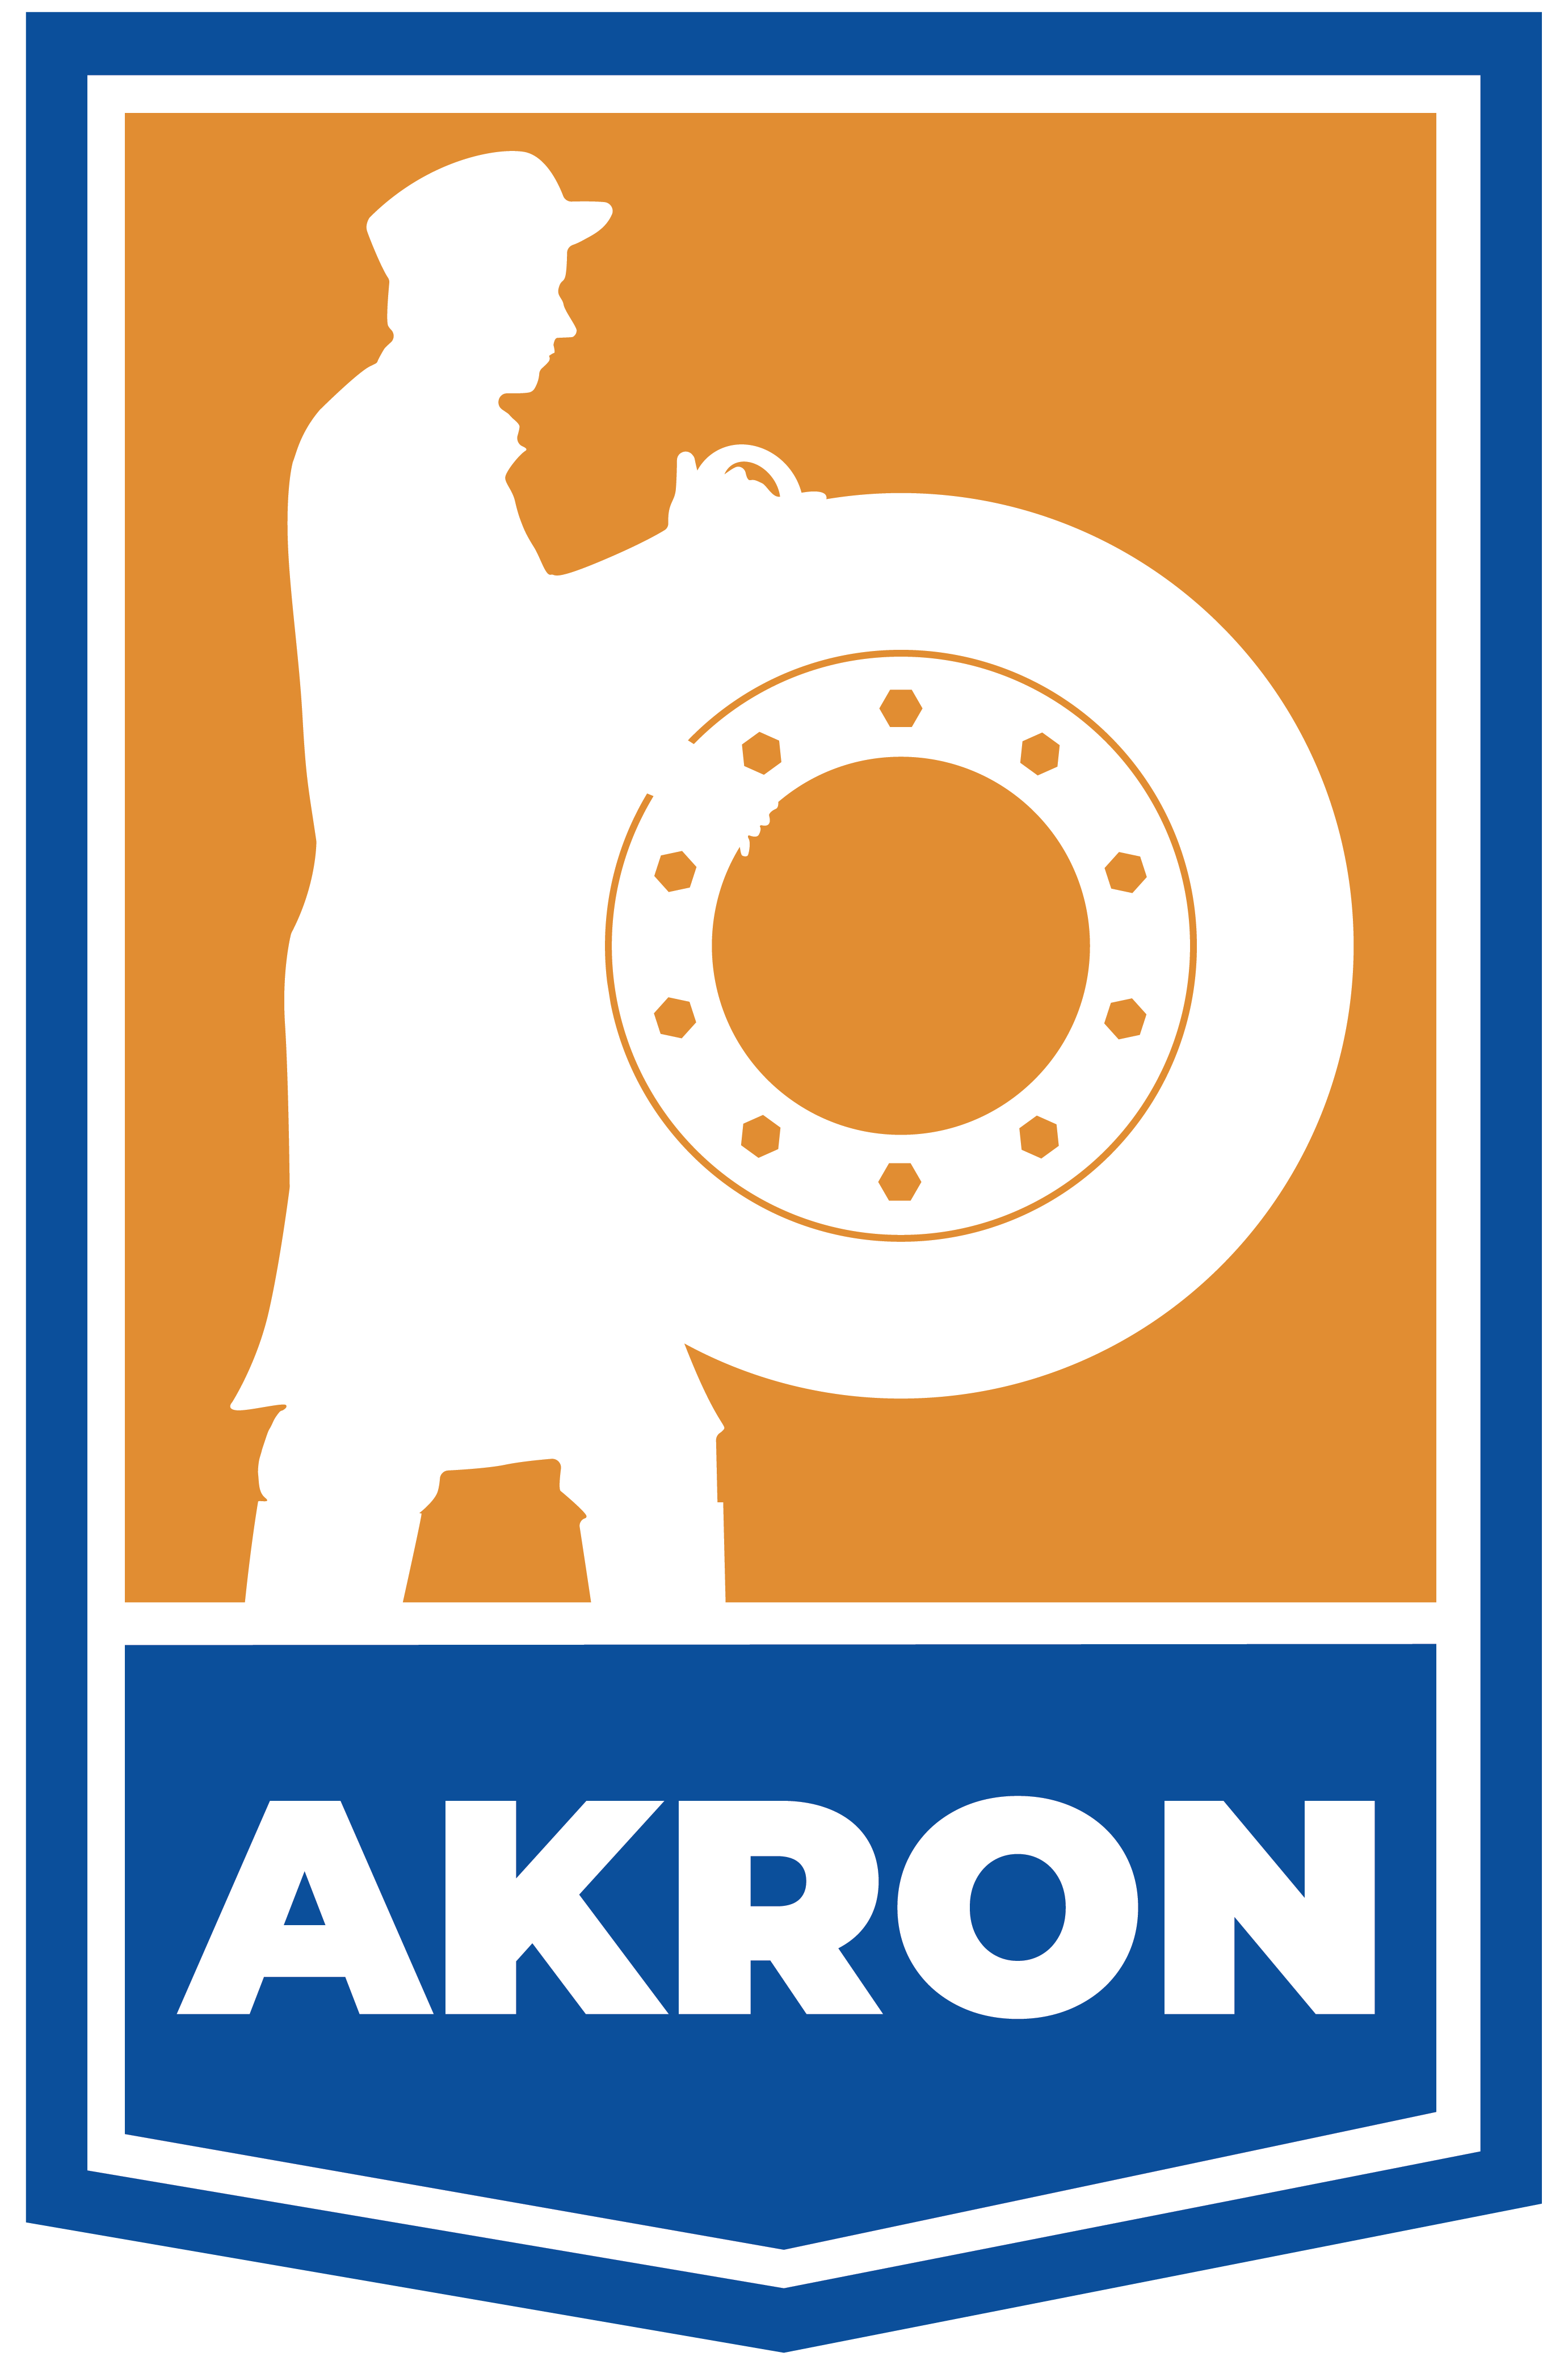 City of Akron logo